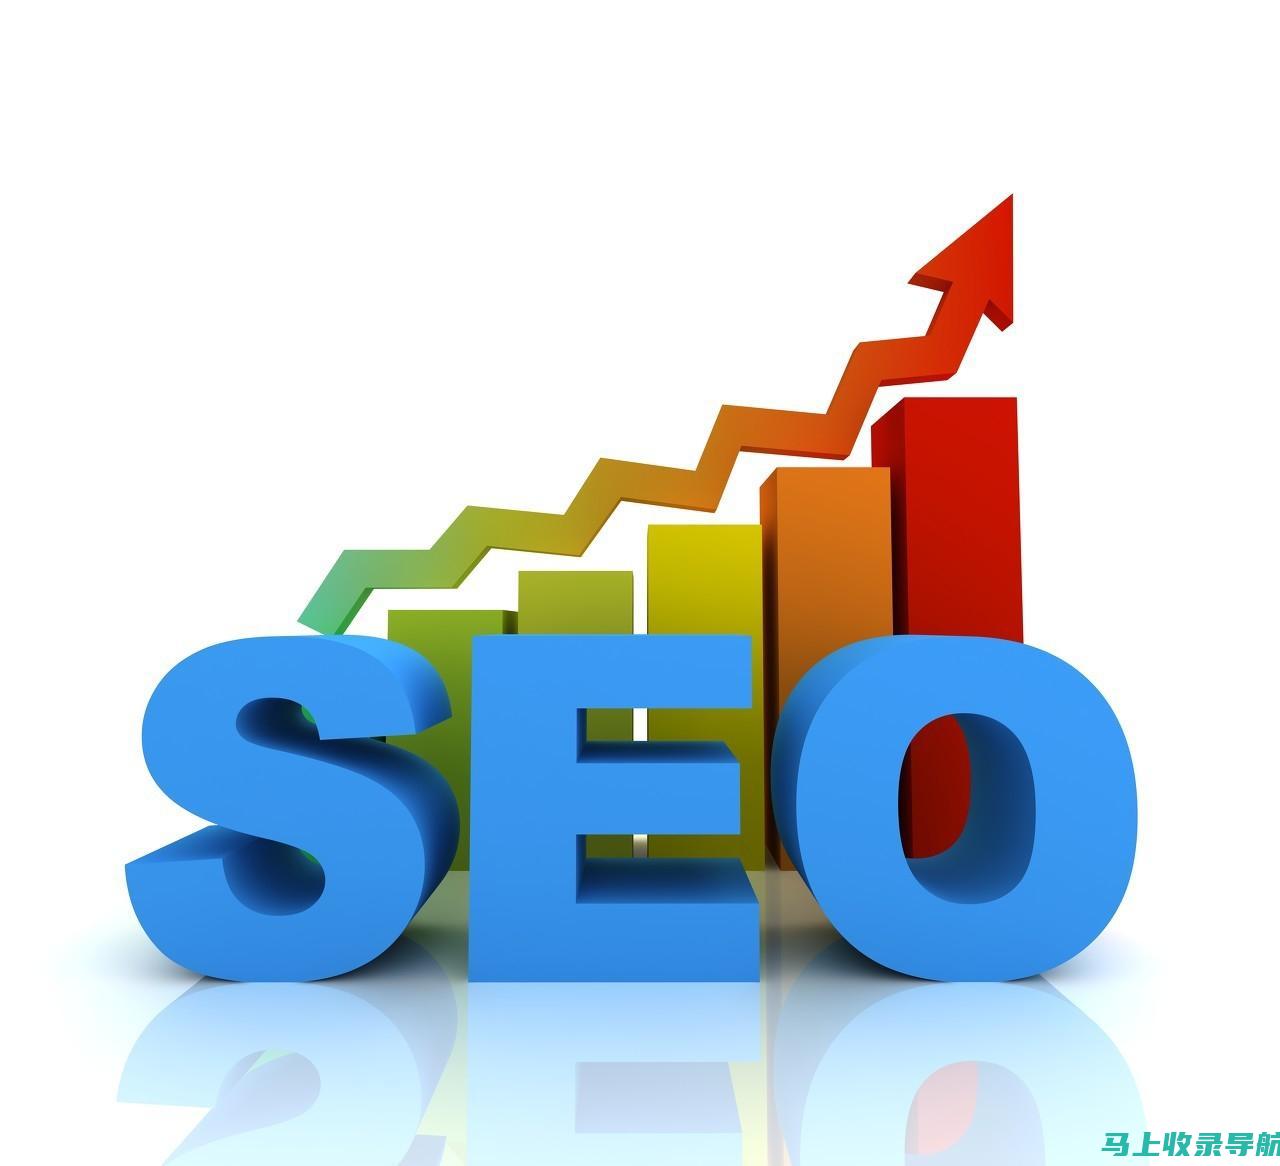 SEO 搜索引擎优化服务：提升您的在线影响力